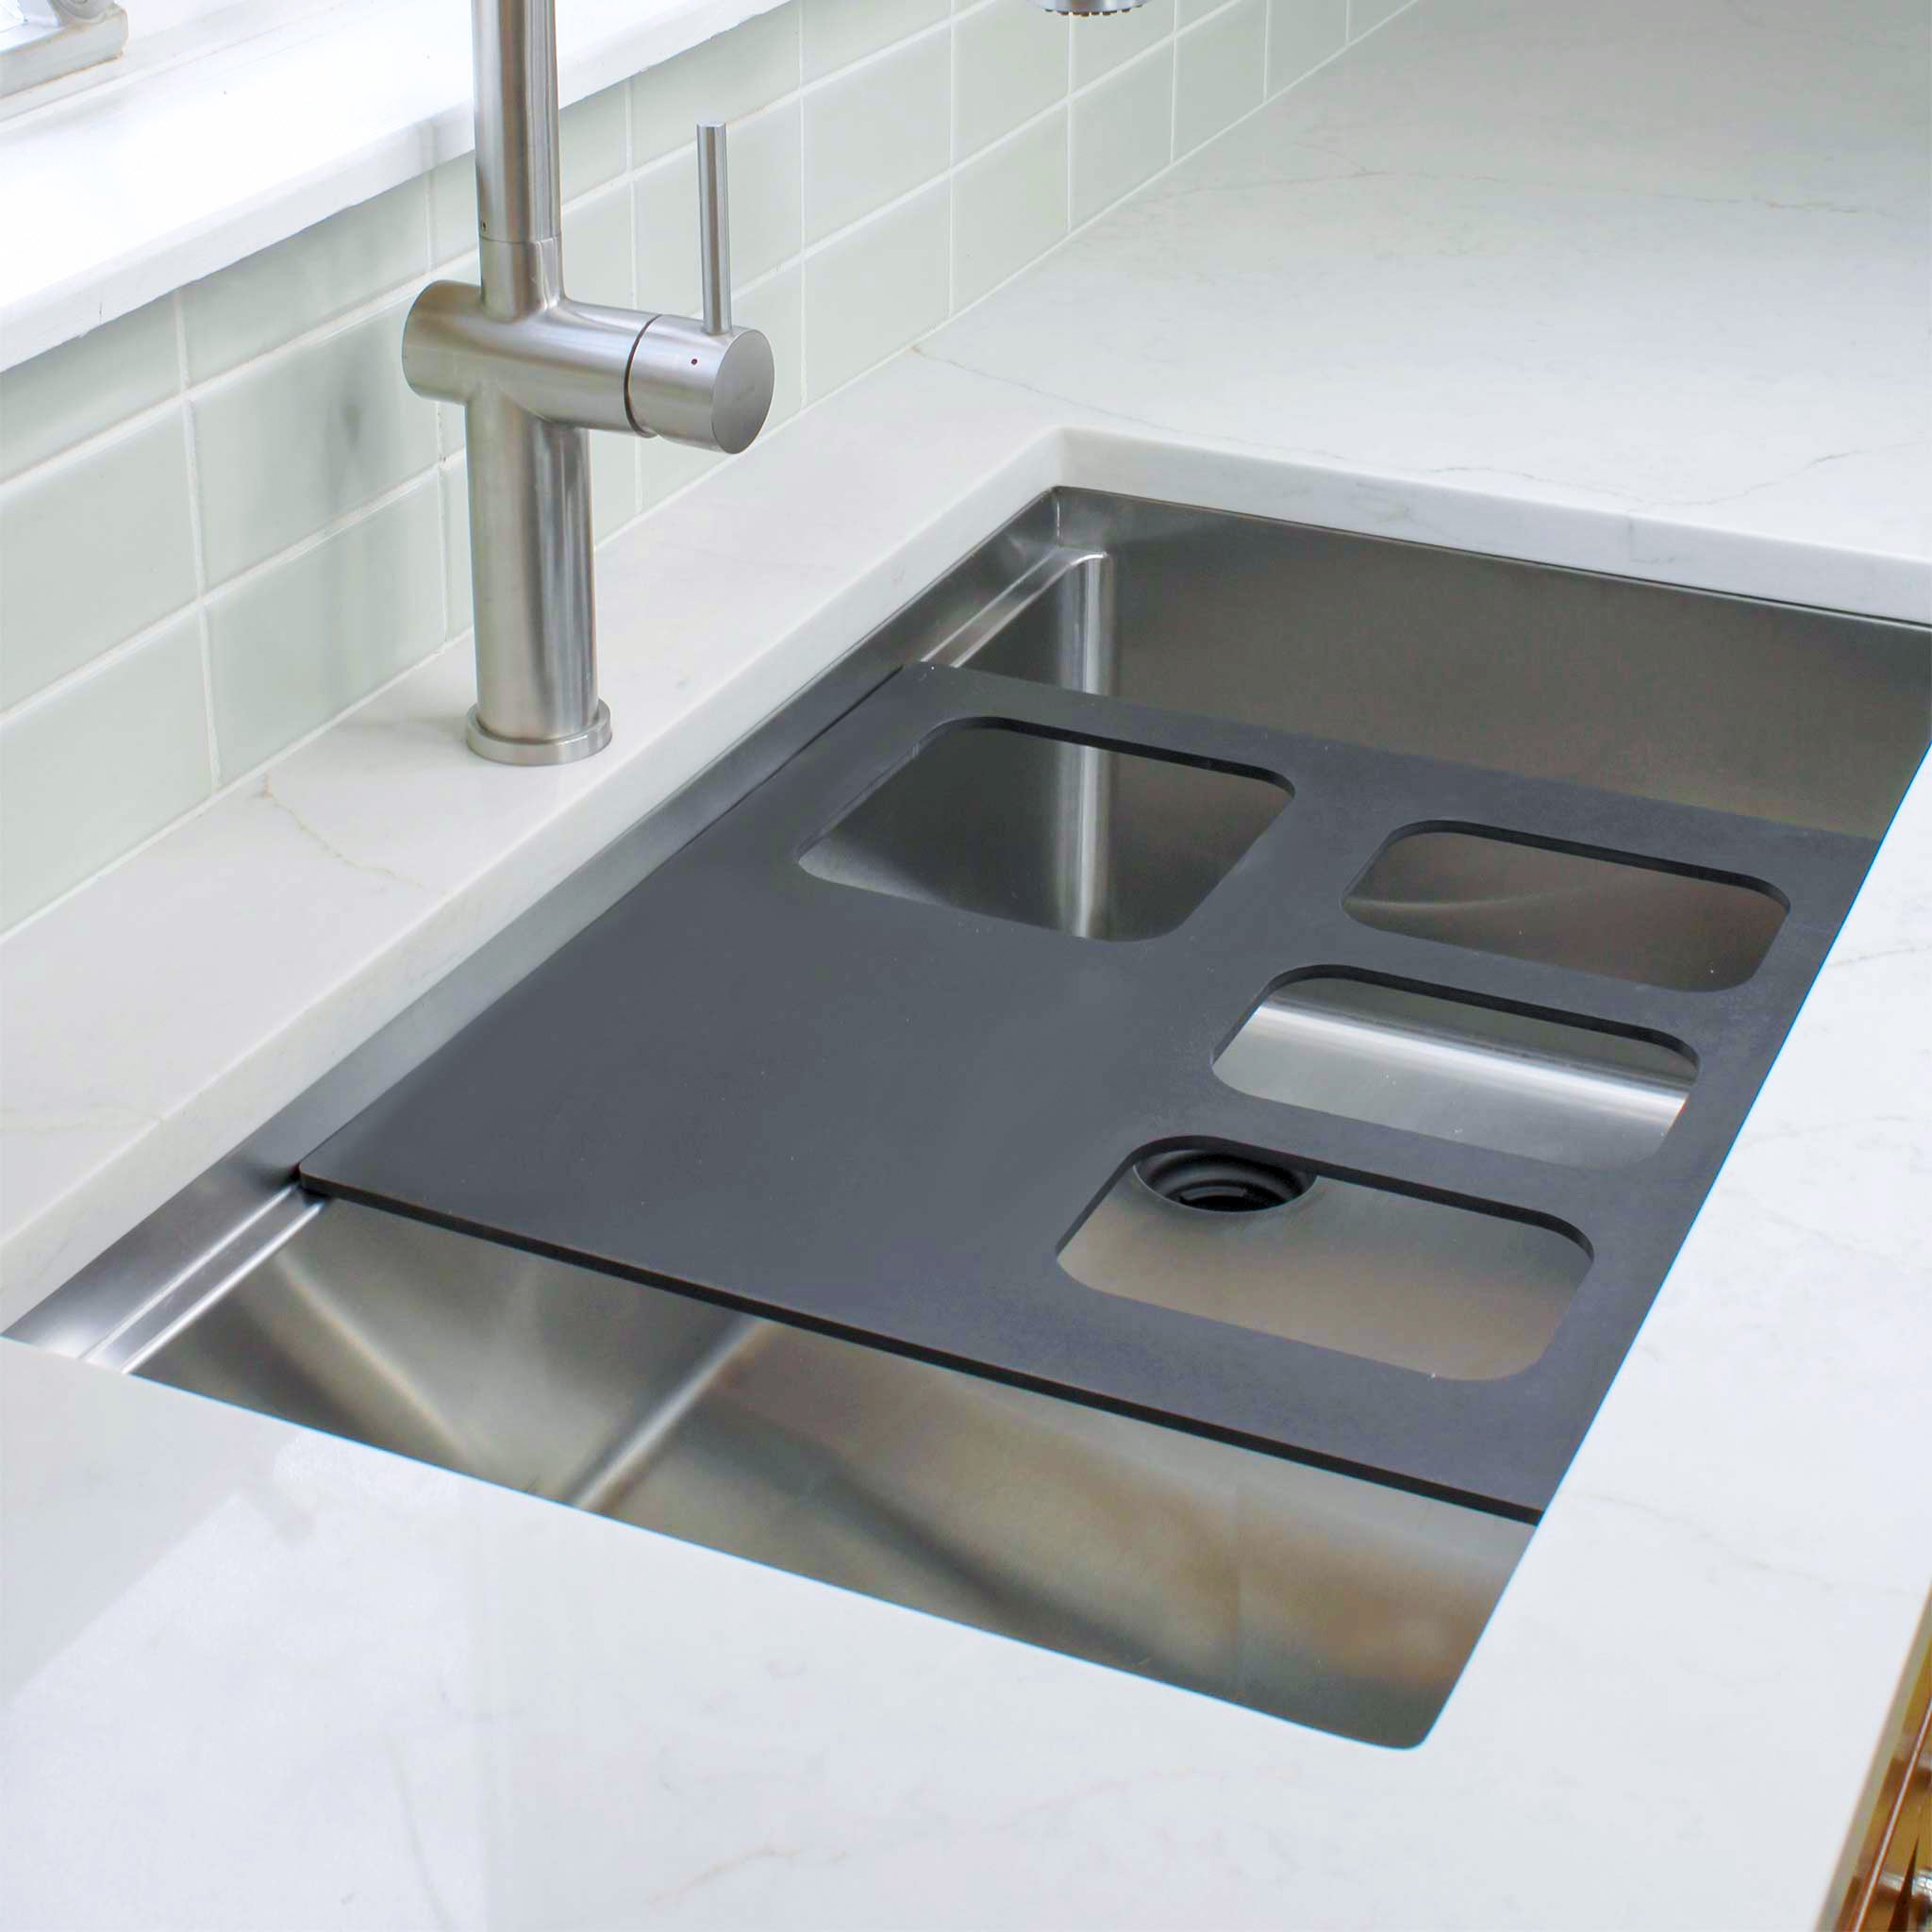 Create Good Sinks’ Black, 4 Bowl Serving Board for a Workstation Kitchen Sink.